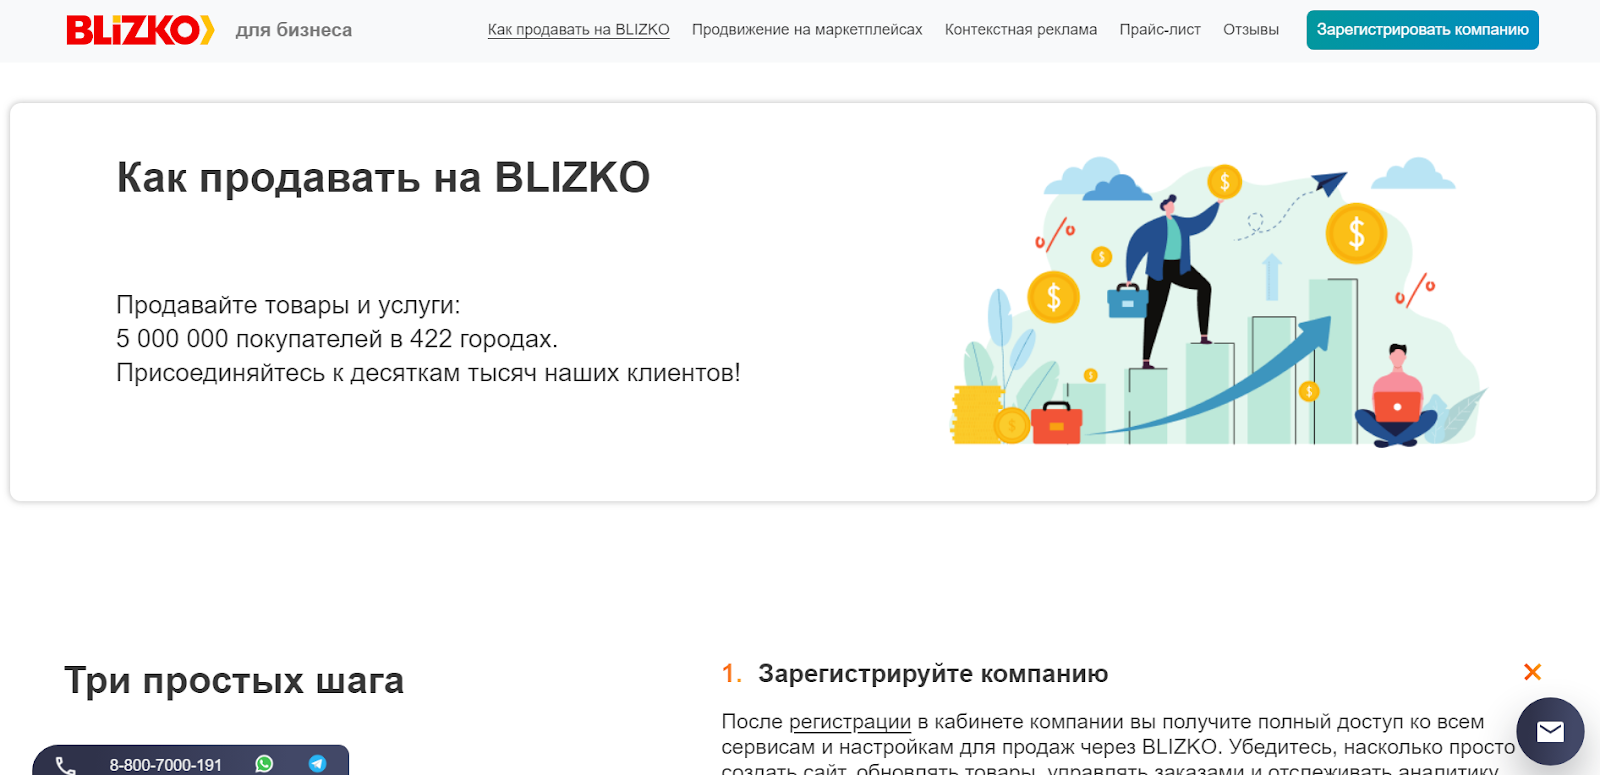 BLIZKO - популярный в России маркетплейс